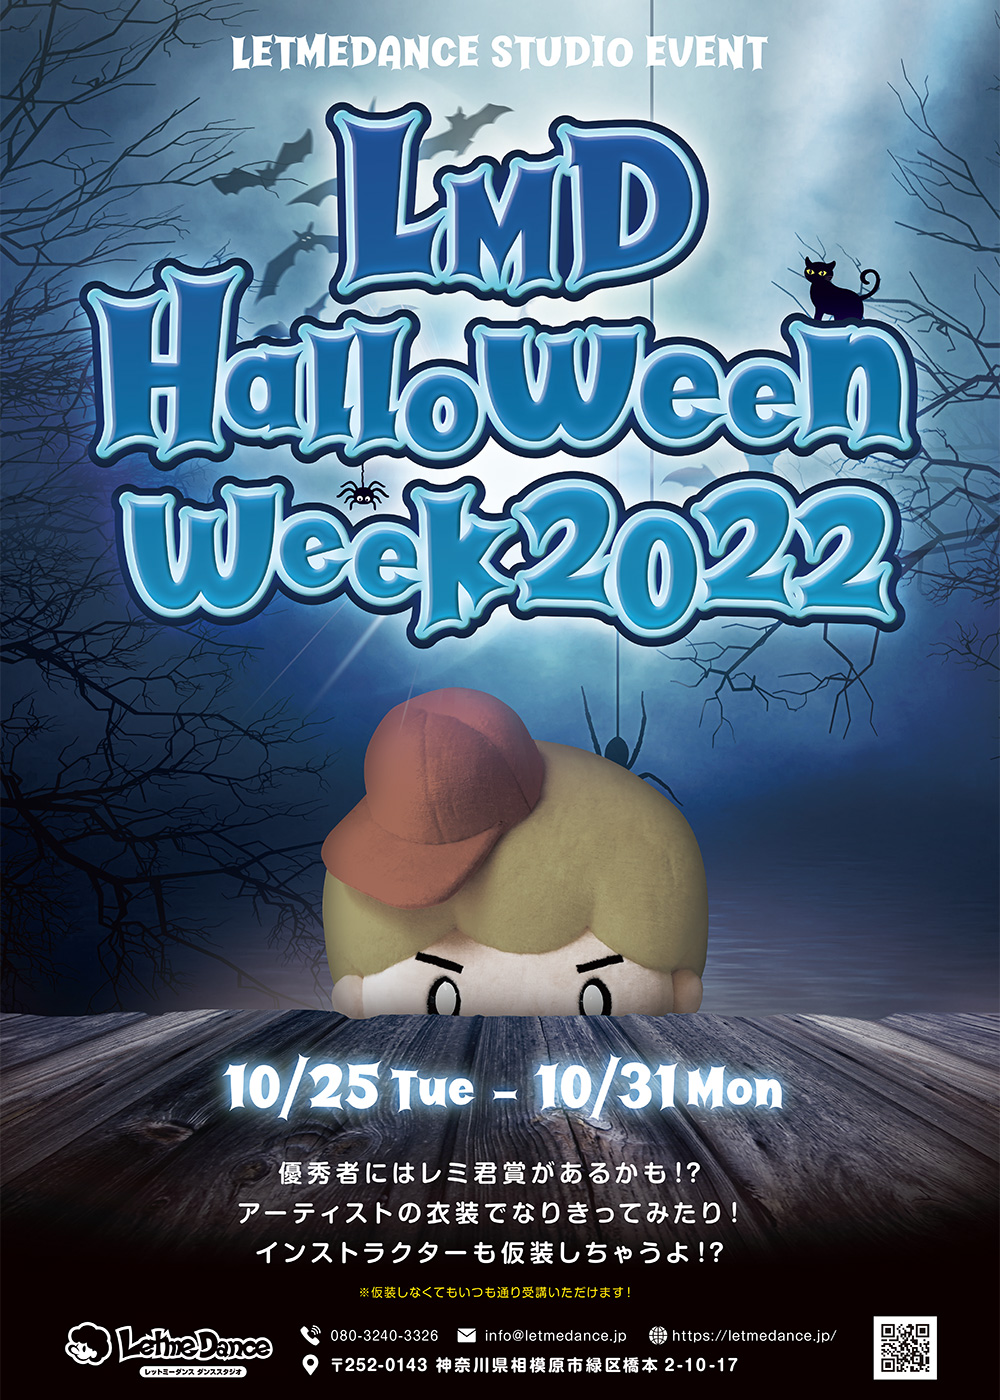 LMD Halloween Week 2022